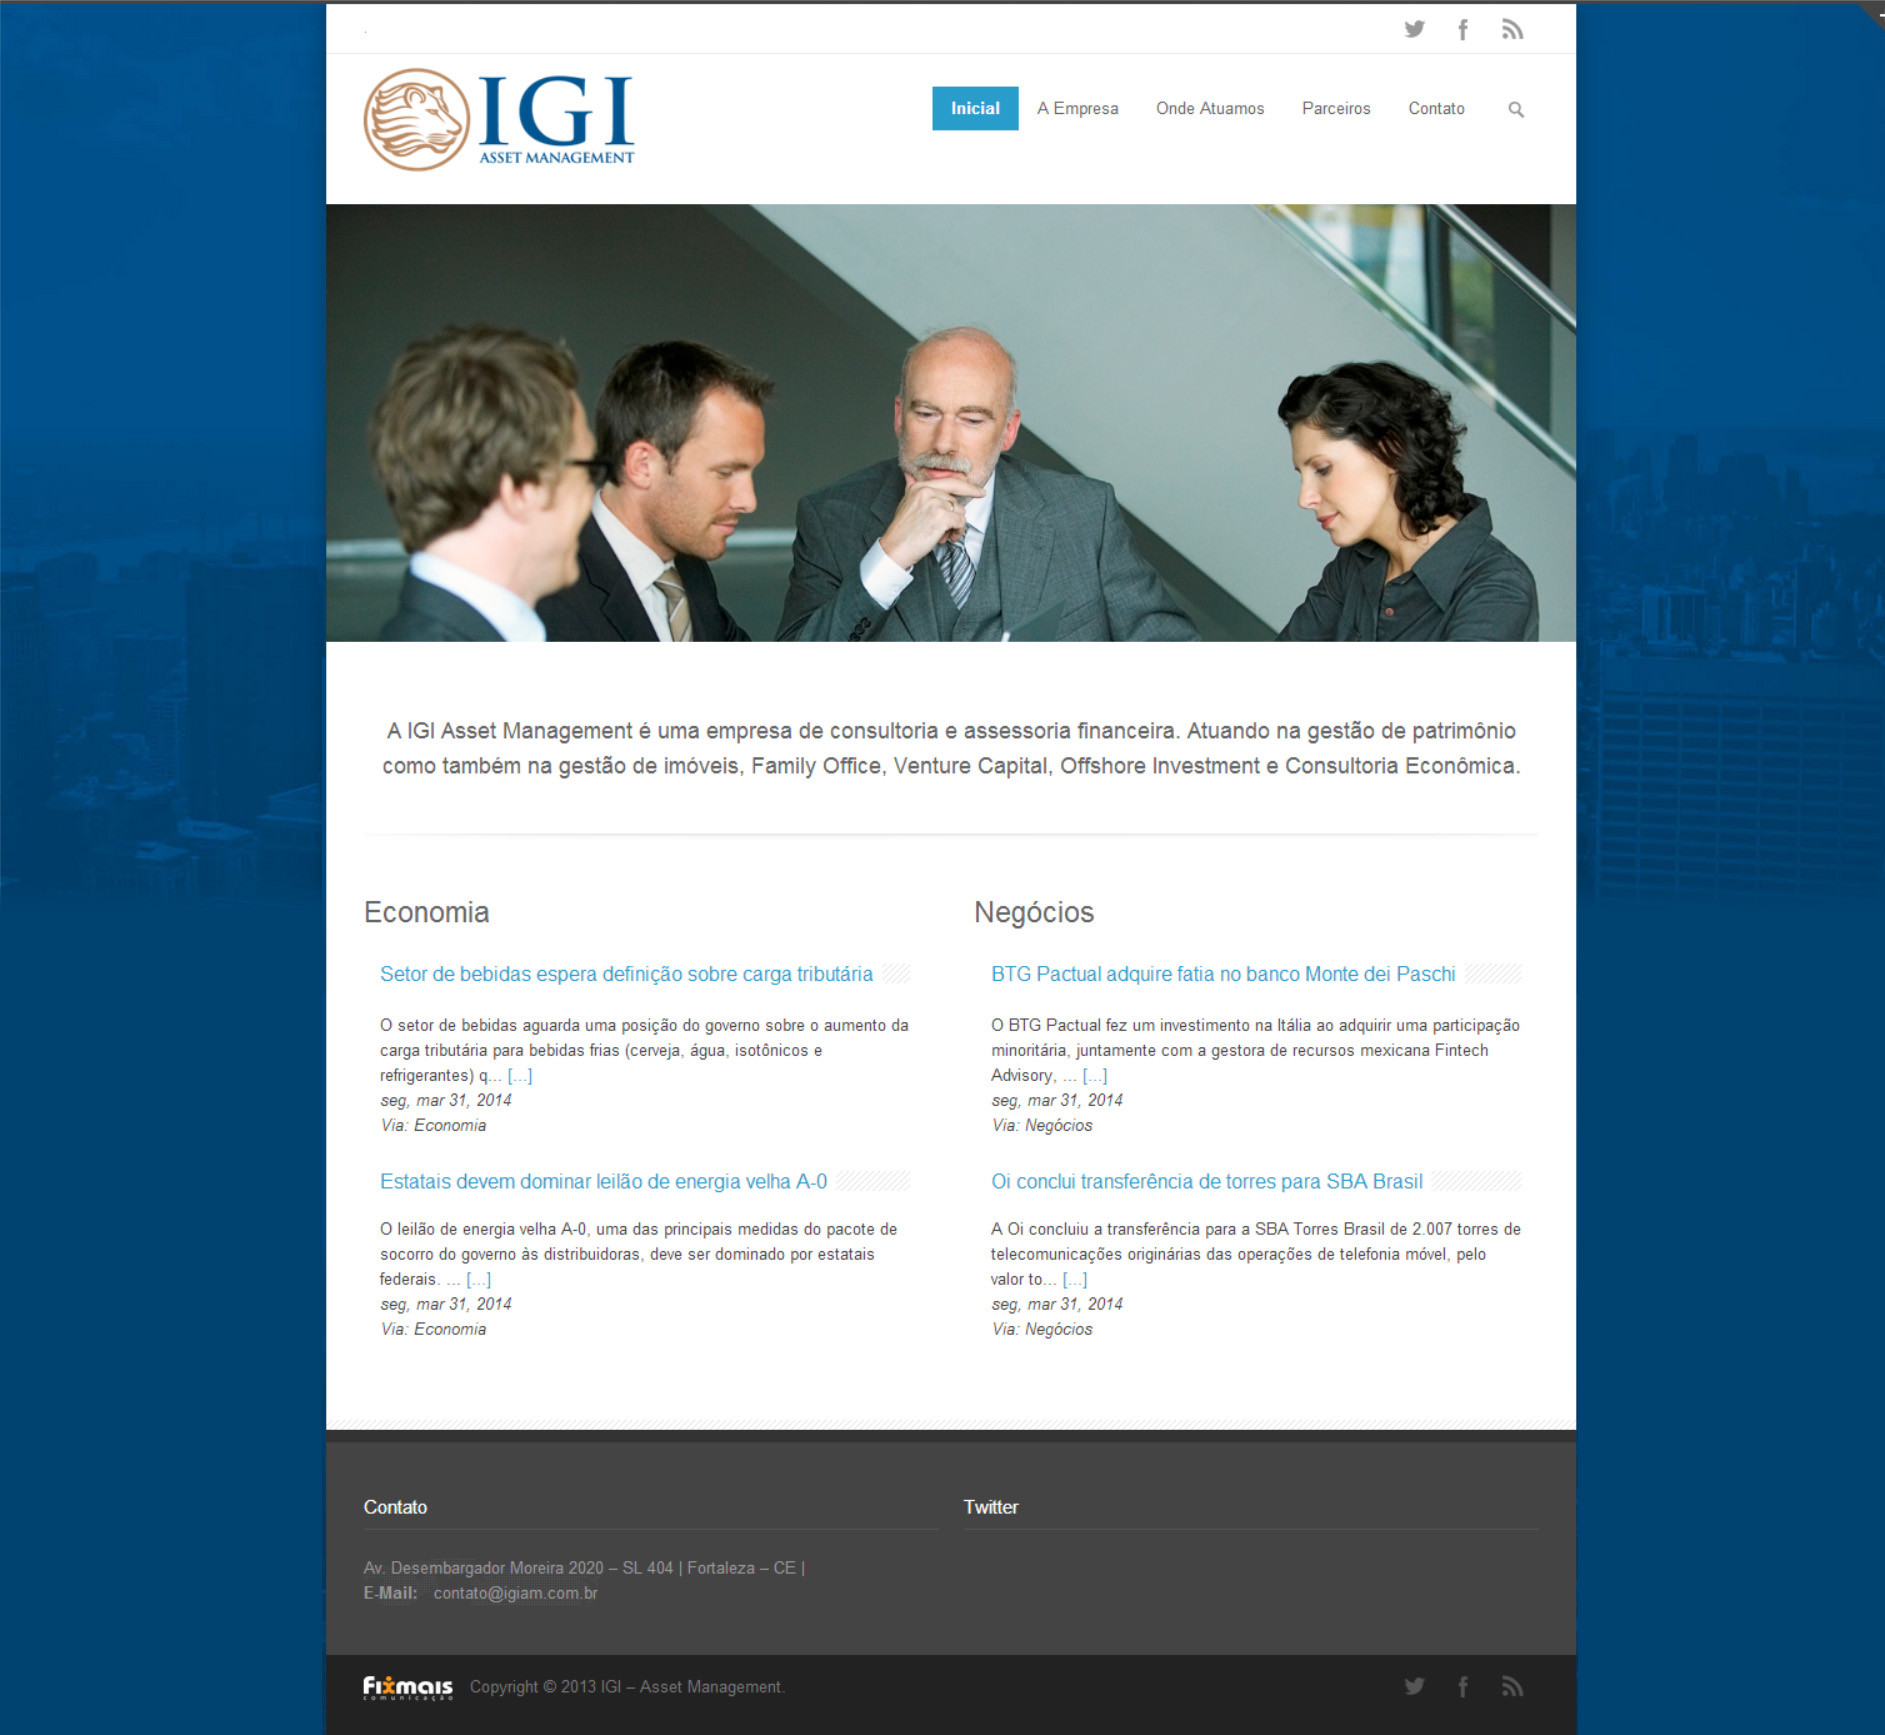 IGI – Asset Management